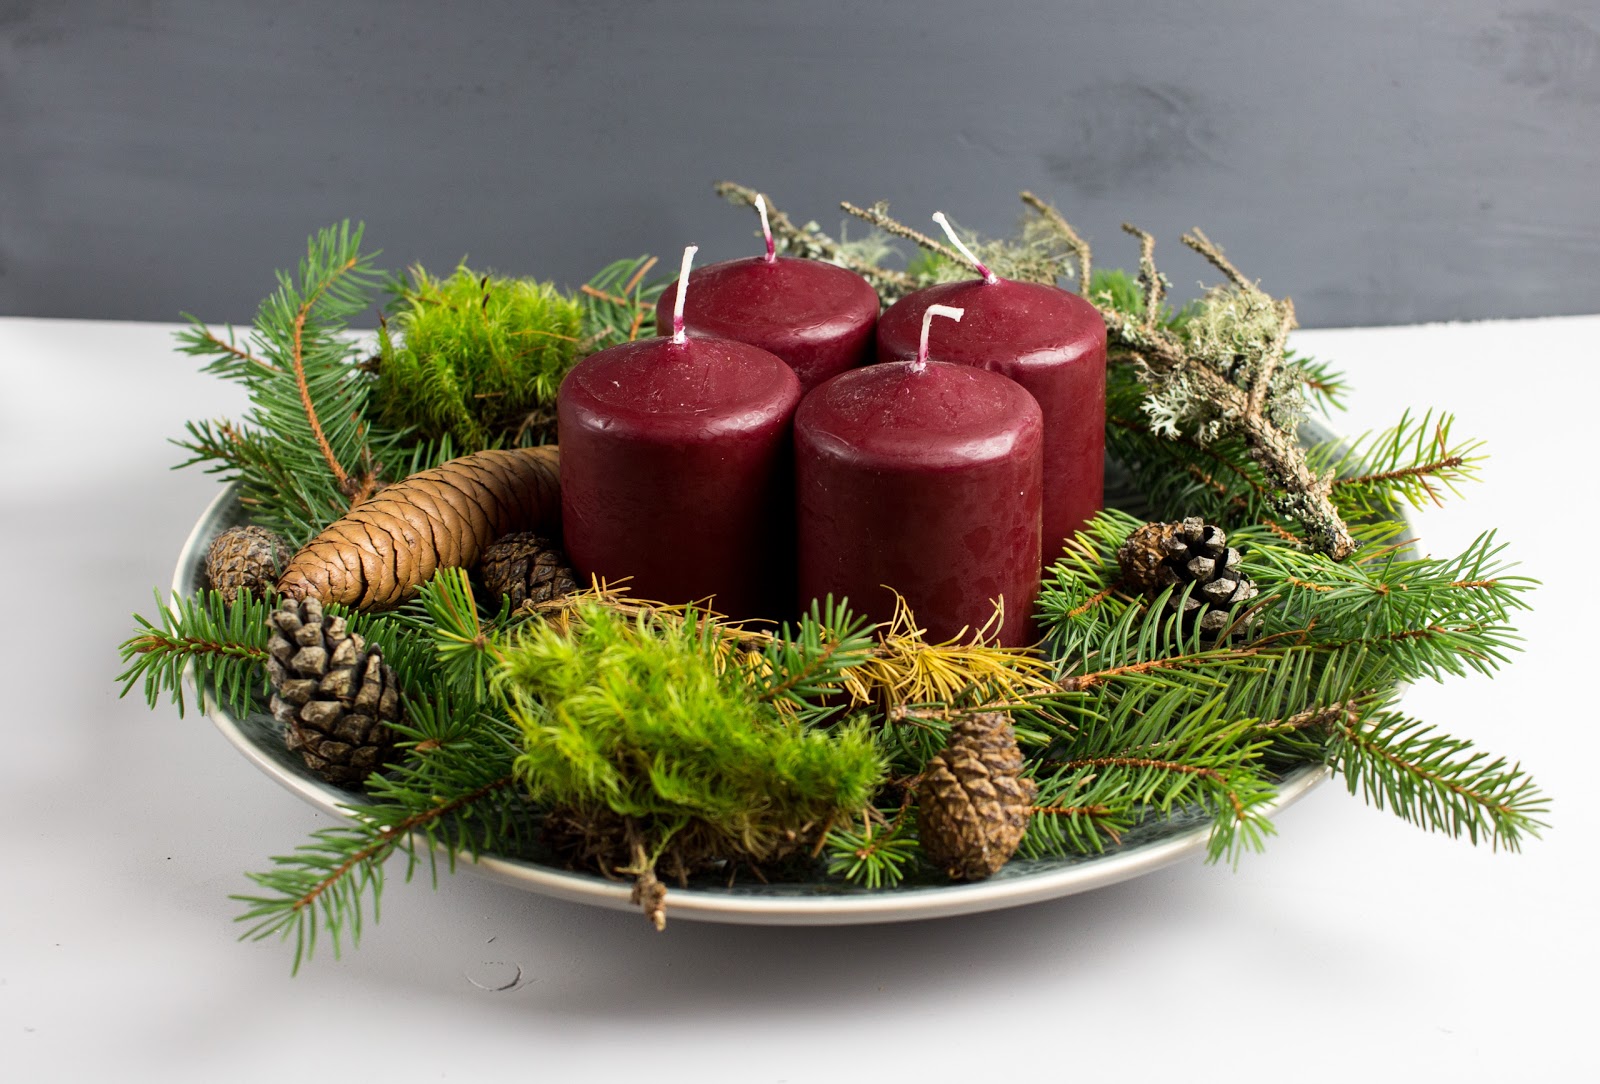 Adventsdeko - moderner Adventskranz - Tellerdeko mit Kerzen - Naturmaterialien - natürlich - einfach - schnell - kostenlos - günstig - weihnachtlich - festlich - DIY - do it yourself - selber machen - basteln - Anleitung